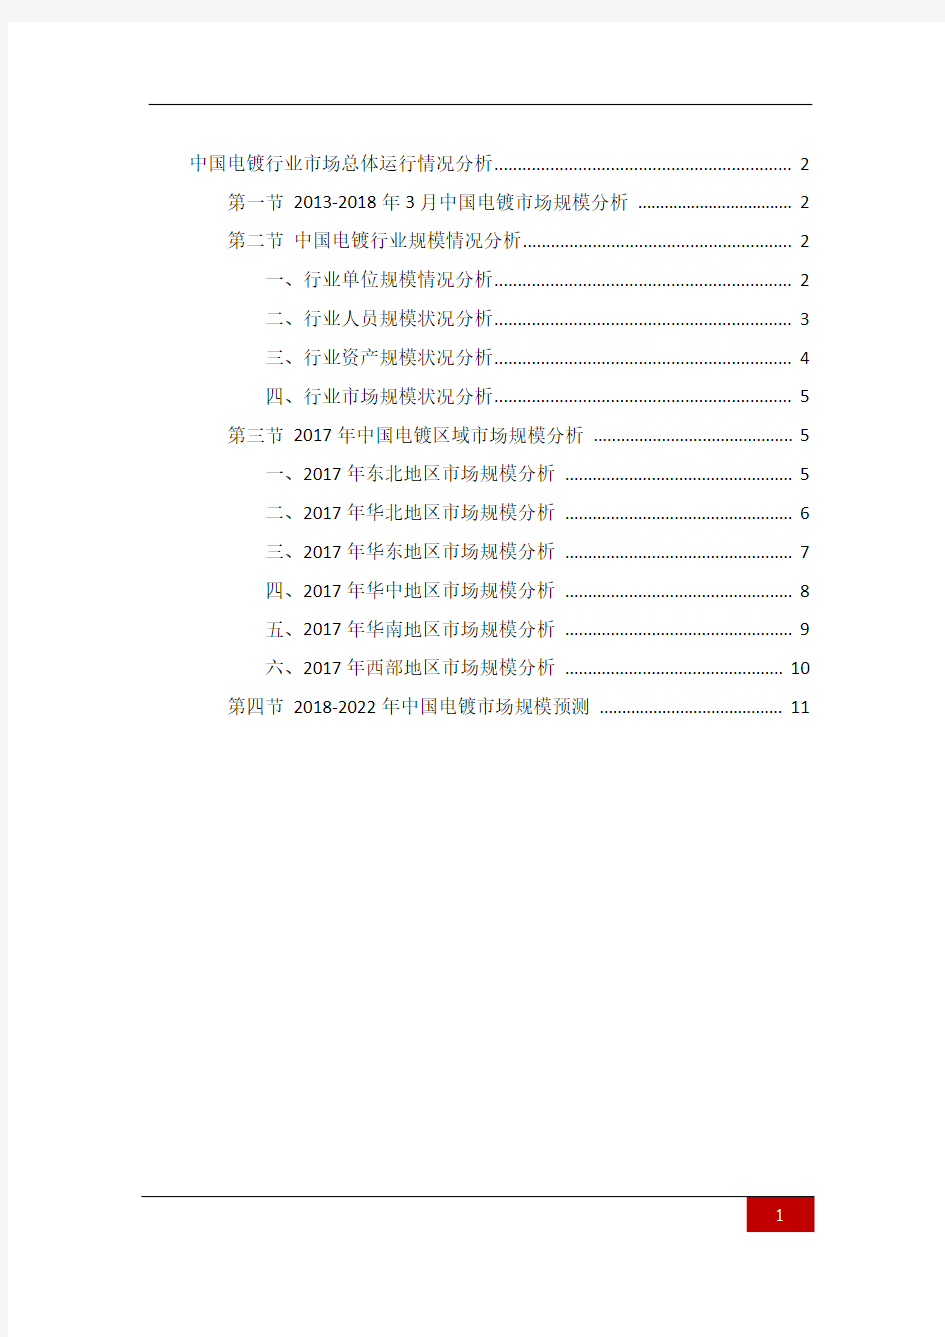 中国电镀行业市场总体运行情况分析(上海环盟)